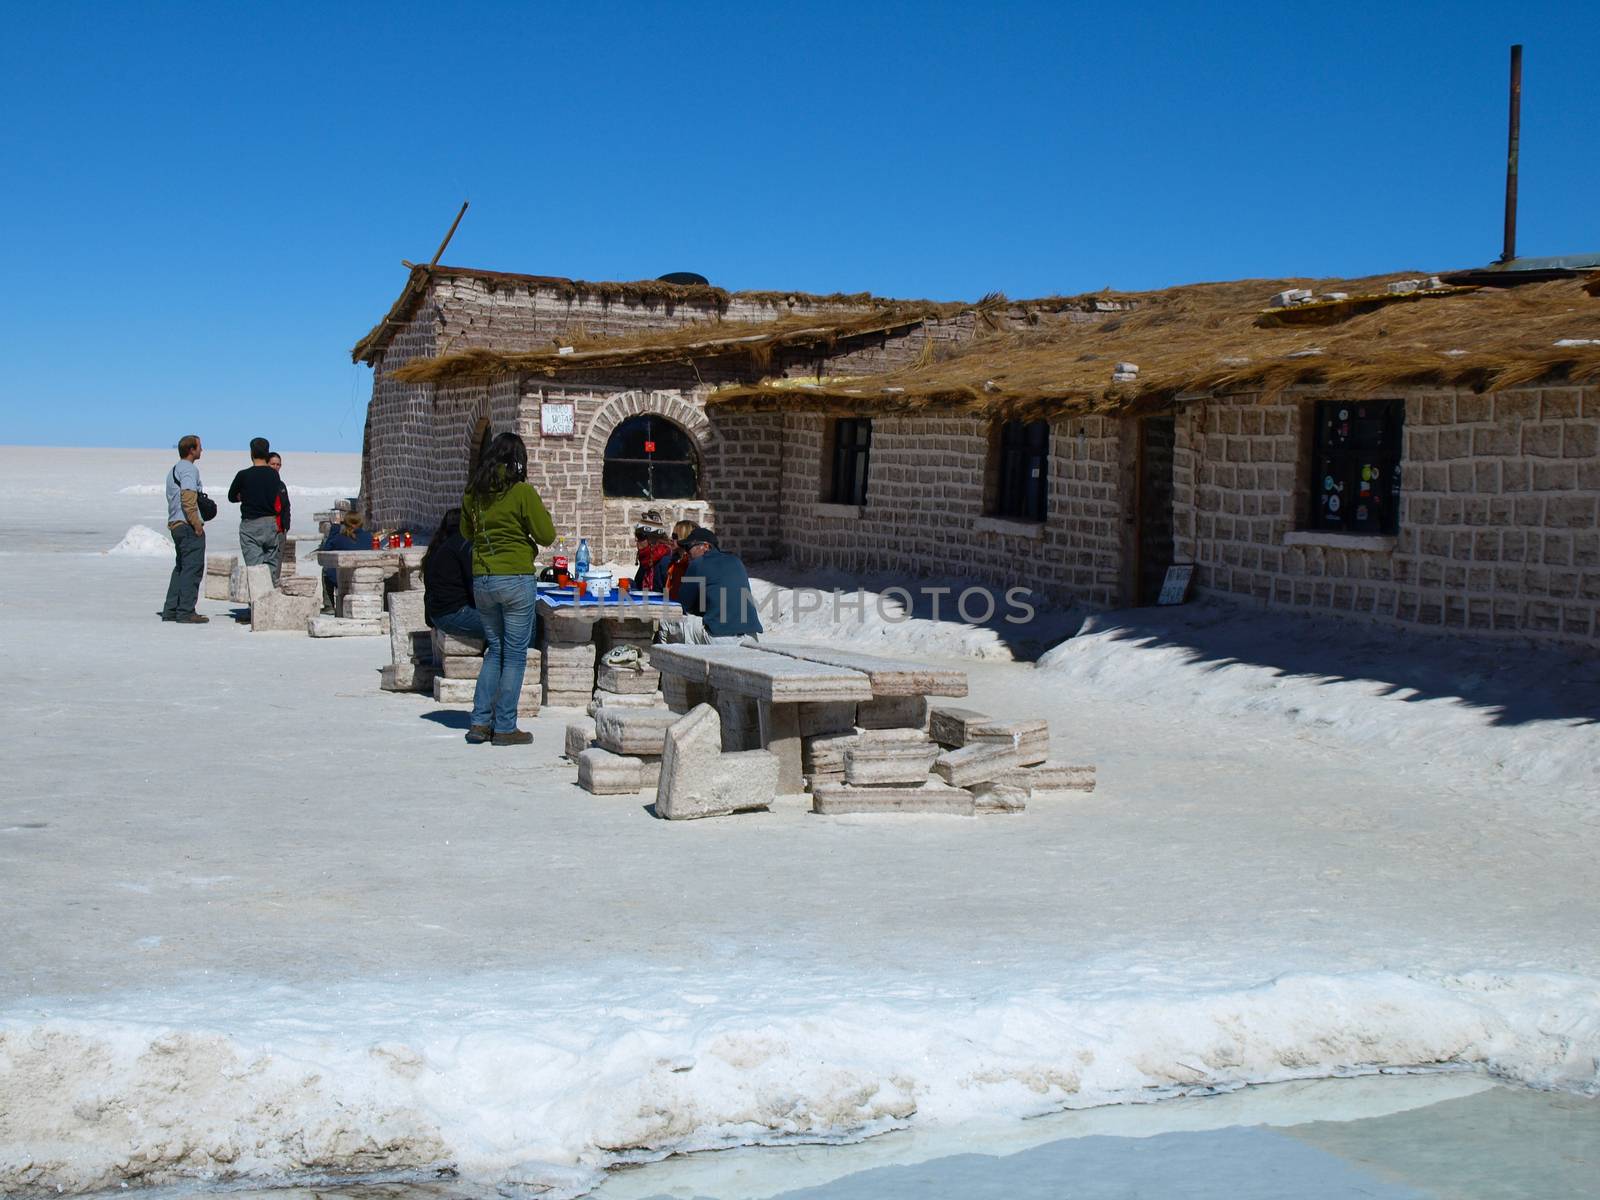 Salt hotel near Uyuni by pyty